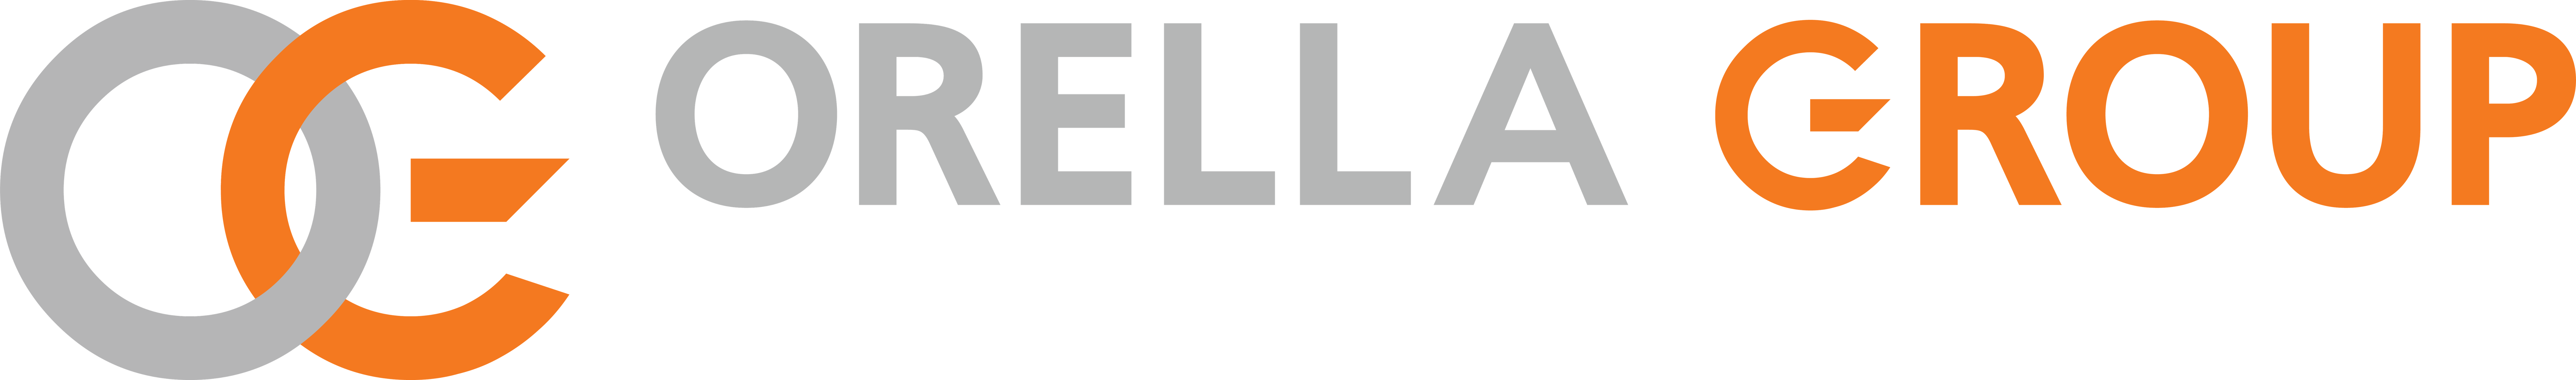 OG Atlantic Full Horizontal Logo